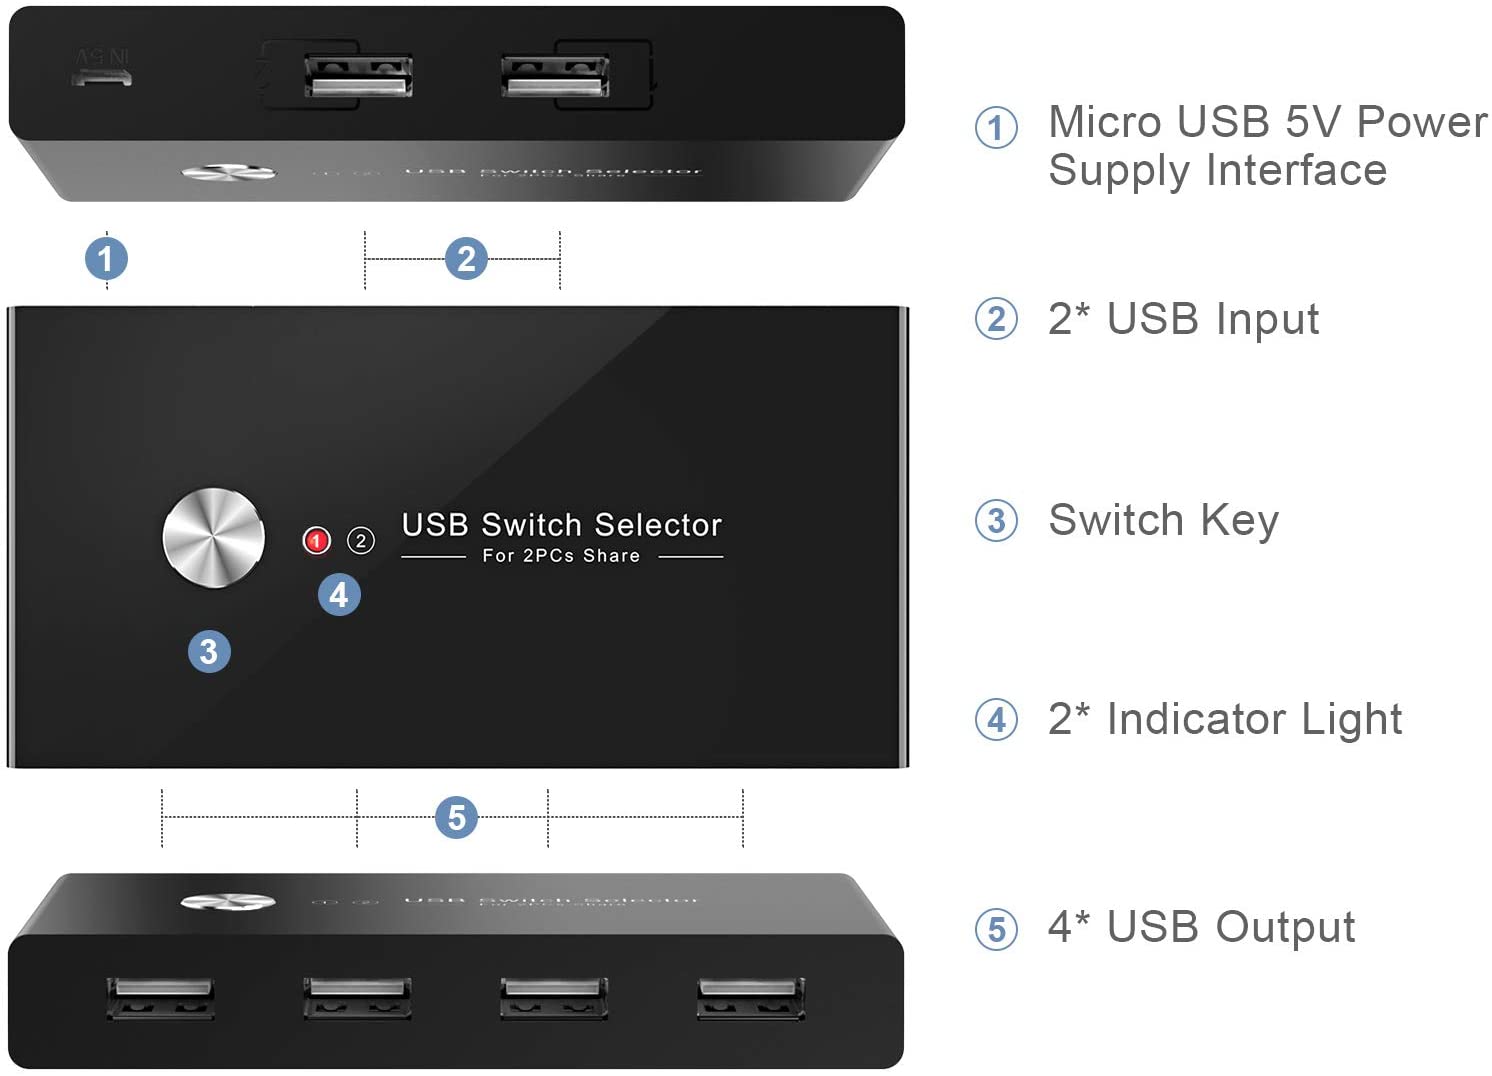 Maus,USB Sticks USB Switch für 4 PCs teilen Sich 3 USB Geräte Scanner Festplatten USB 2.0 Switch Wahlschalter für Drucker Rybozen KVM Switcher Tastatur USB Sticks 